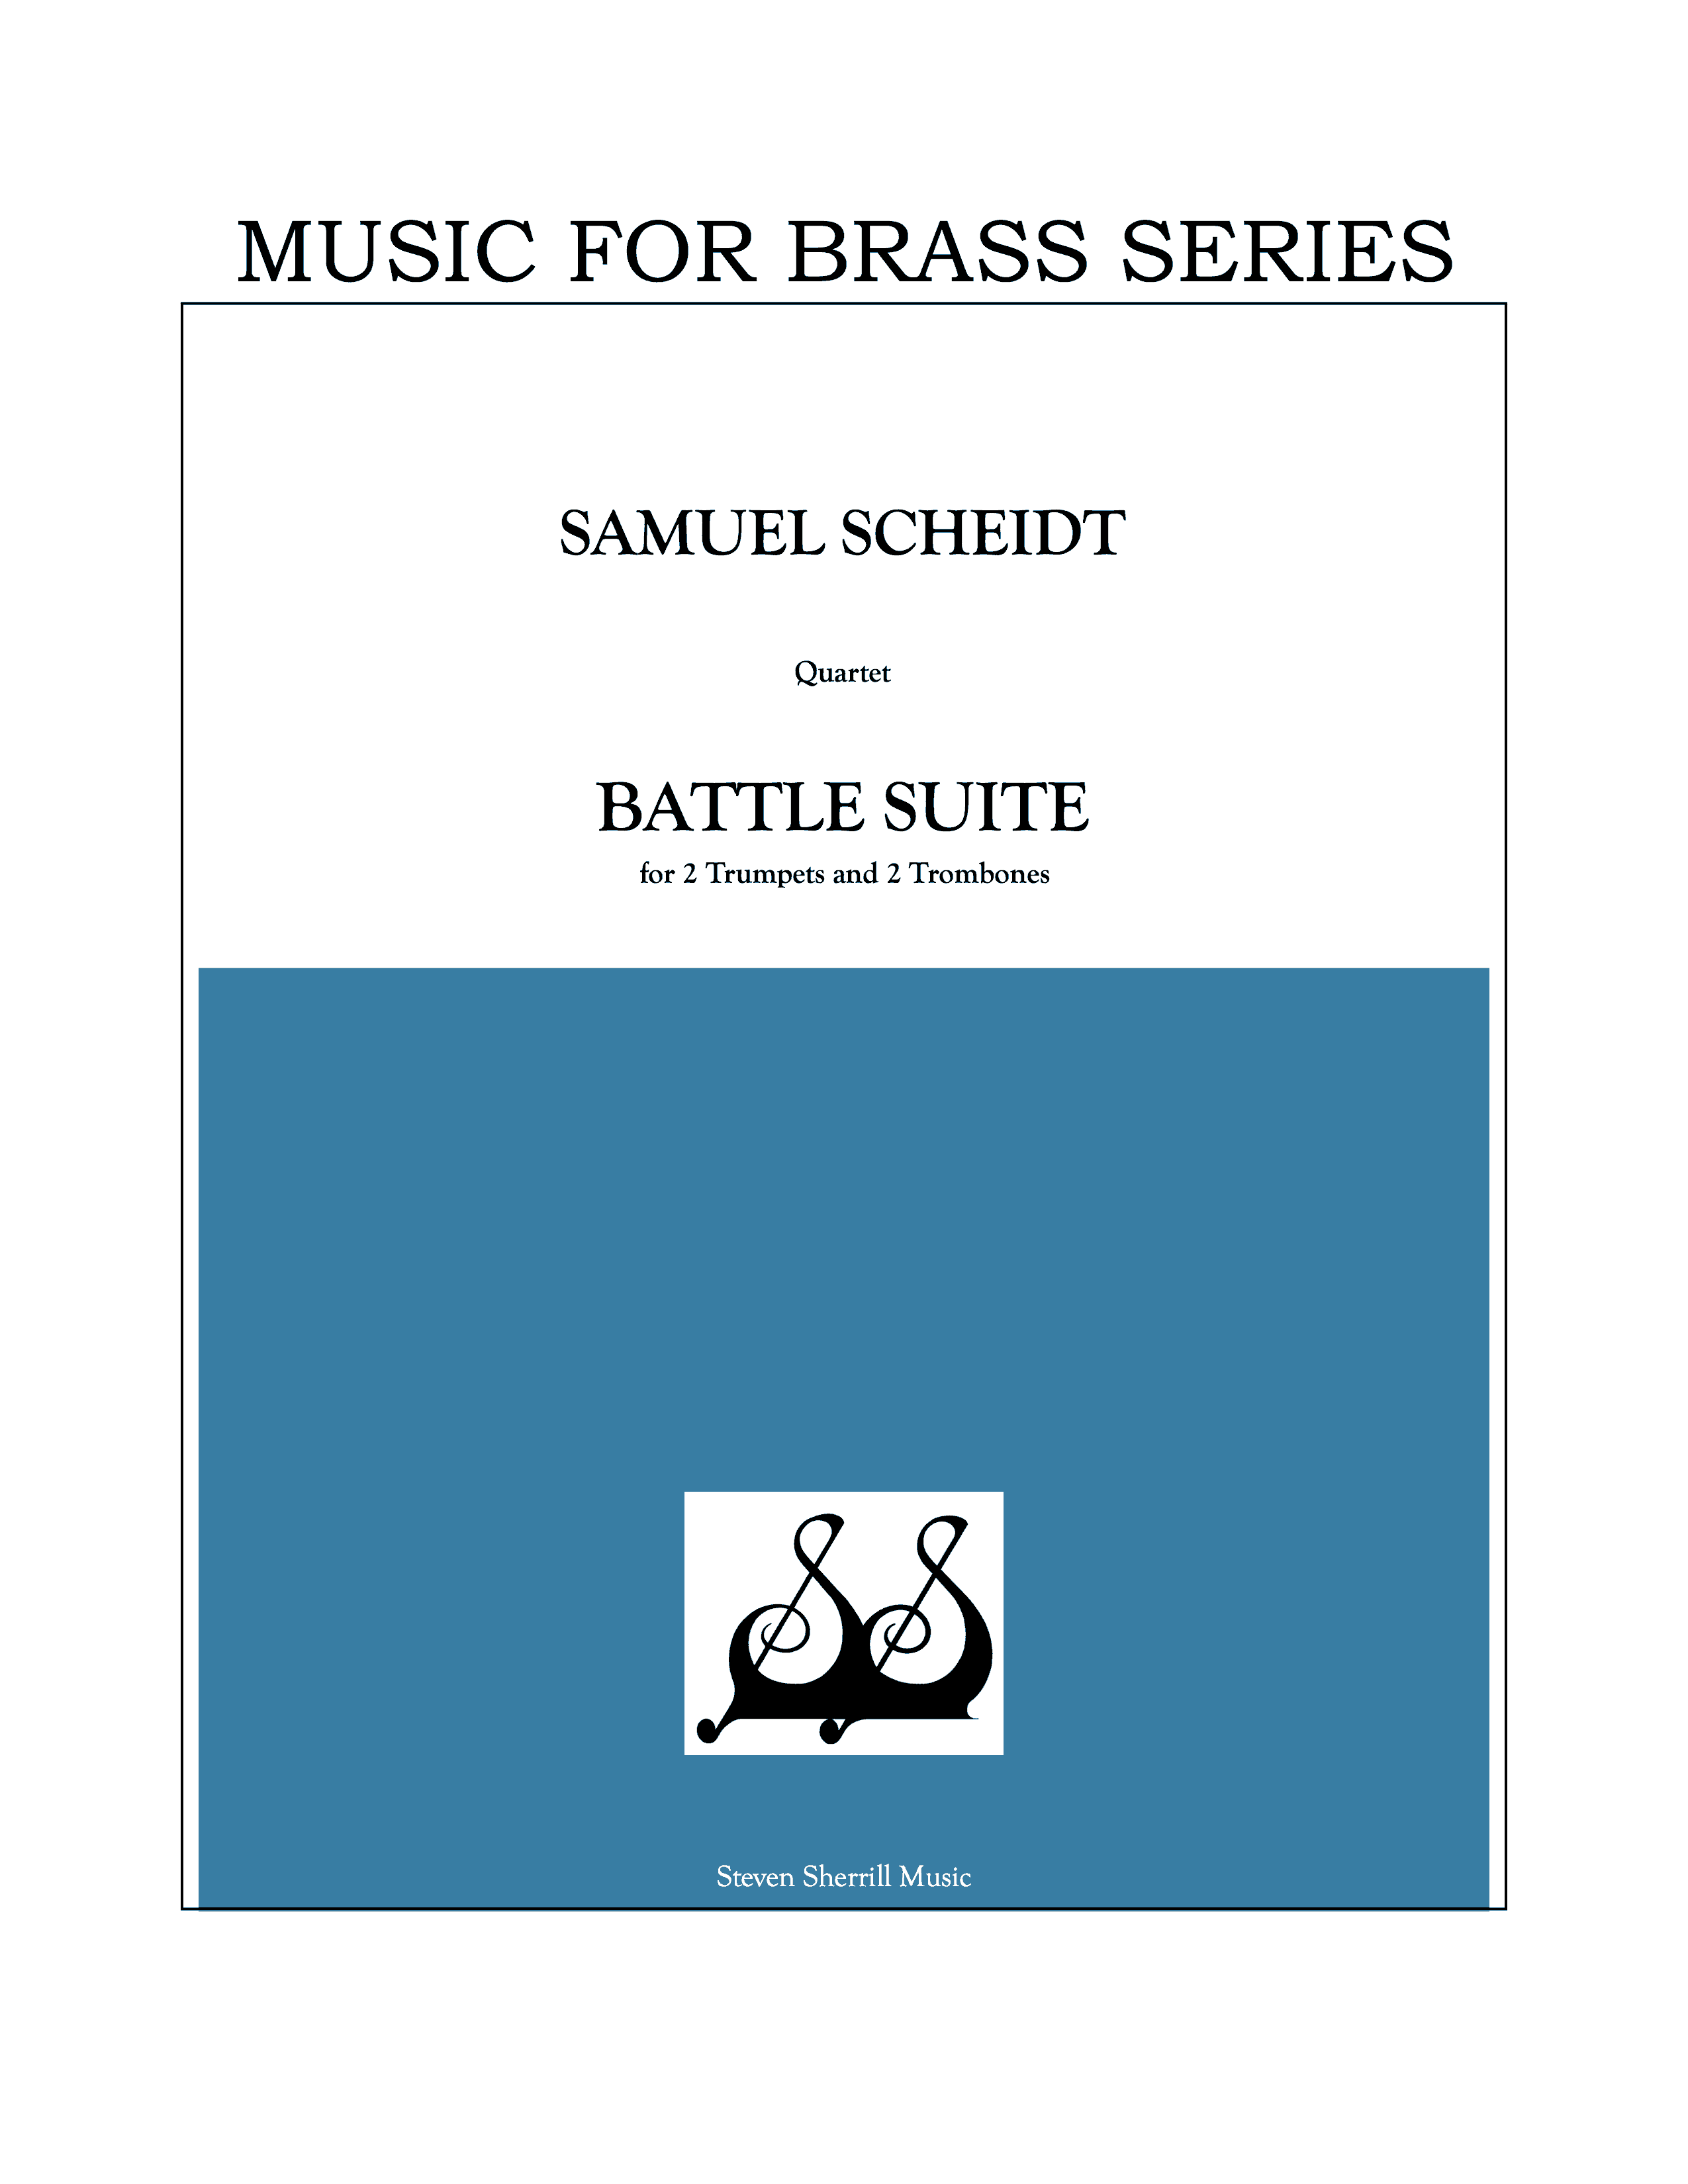 Battle Suite cover page